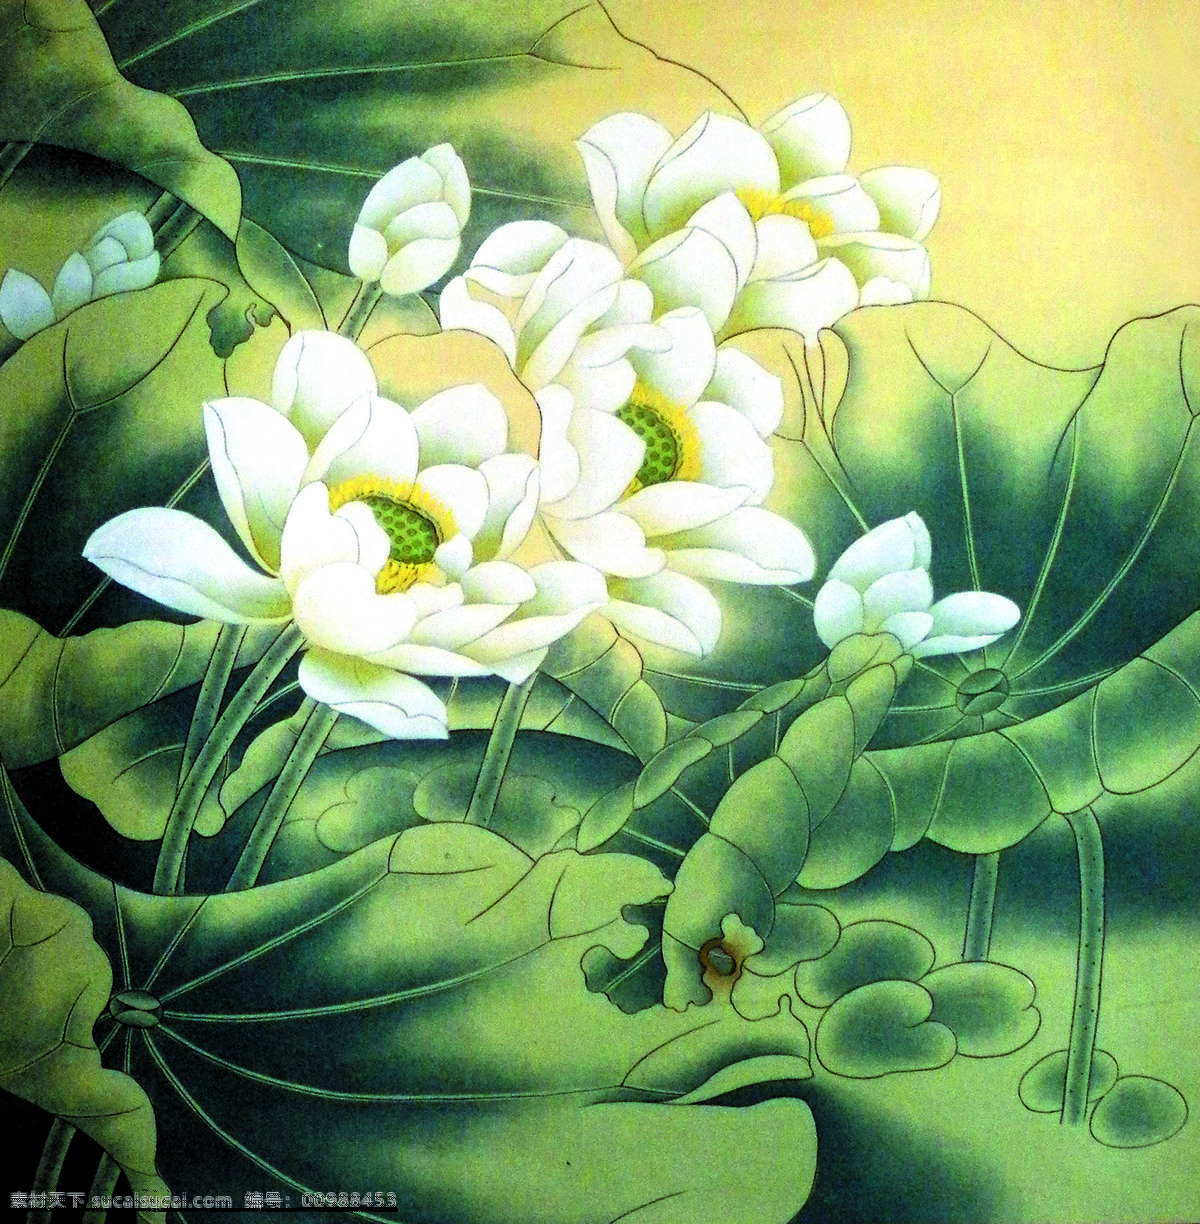 白荷花 美术 中国画 工笔画 荷花 国画荷花 文化艺术 绘画书法